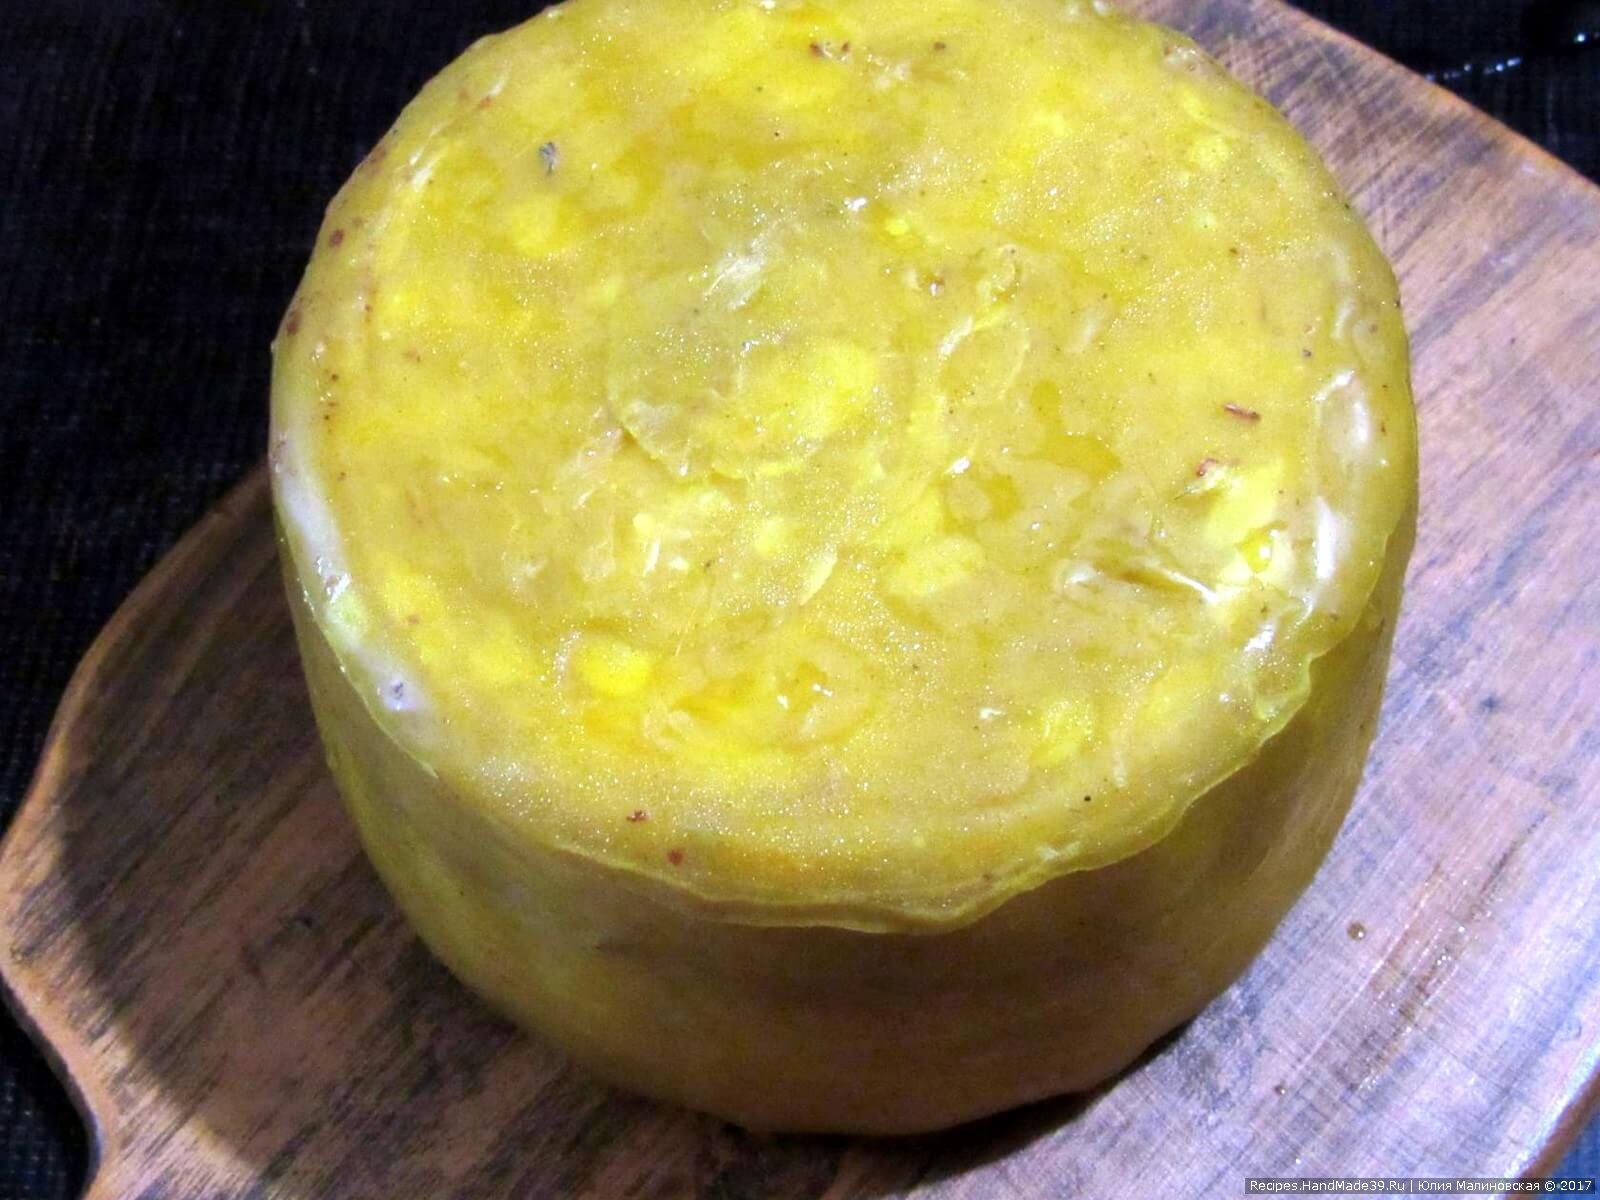 Через 10 дней молодой сыр Качотта готов. Его можно выдерживать до 2-х месяцев при температуре 10-12 °C. Приятного аппетита!